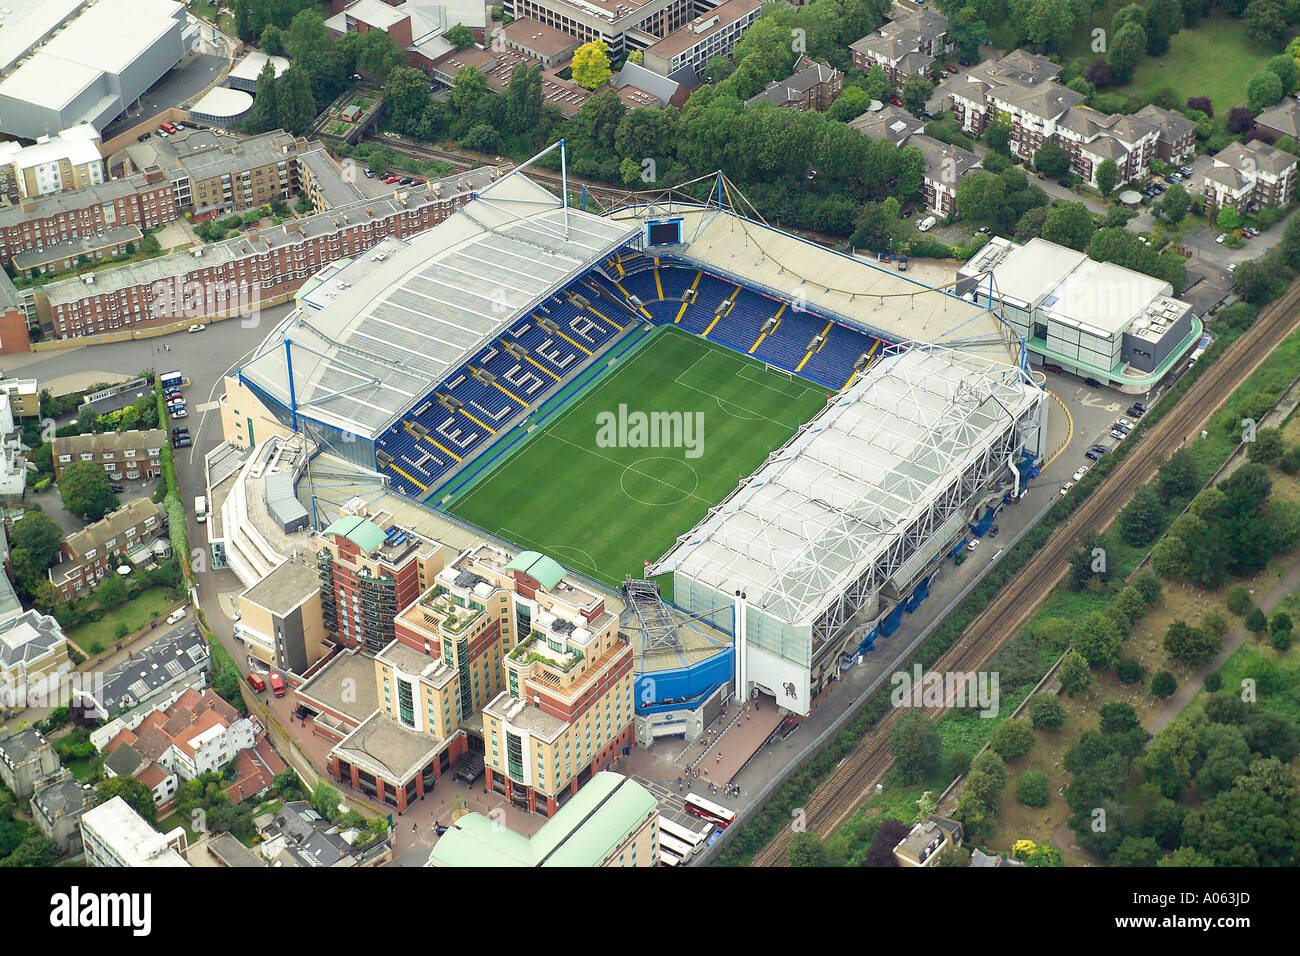 Vue aérienne de Chelsea Football Club à Londres, également connu sous le nom de stade de Stamford Bridge Accueil au blues ou les retraités Banque D'Images